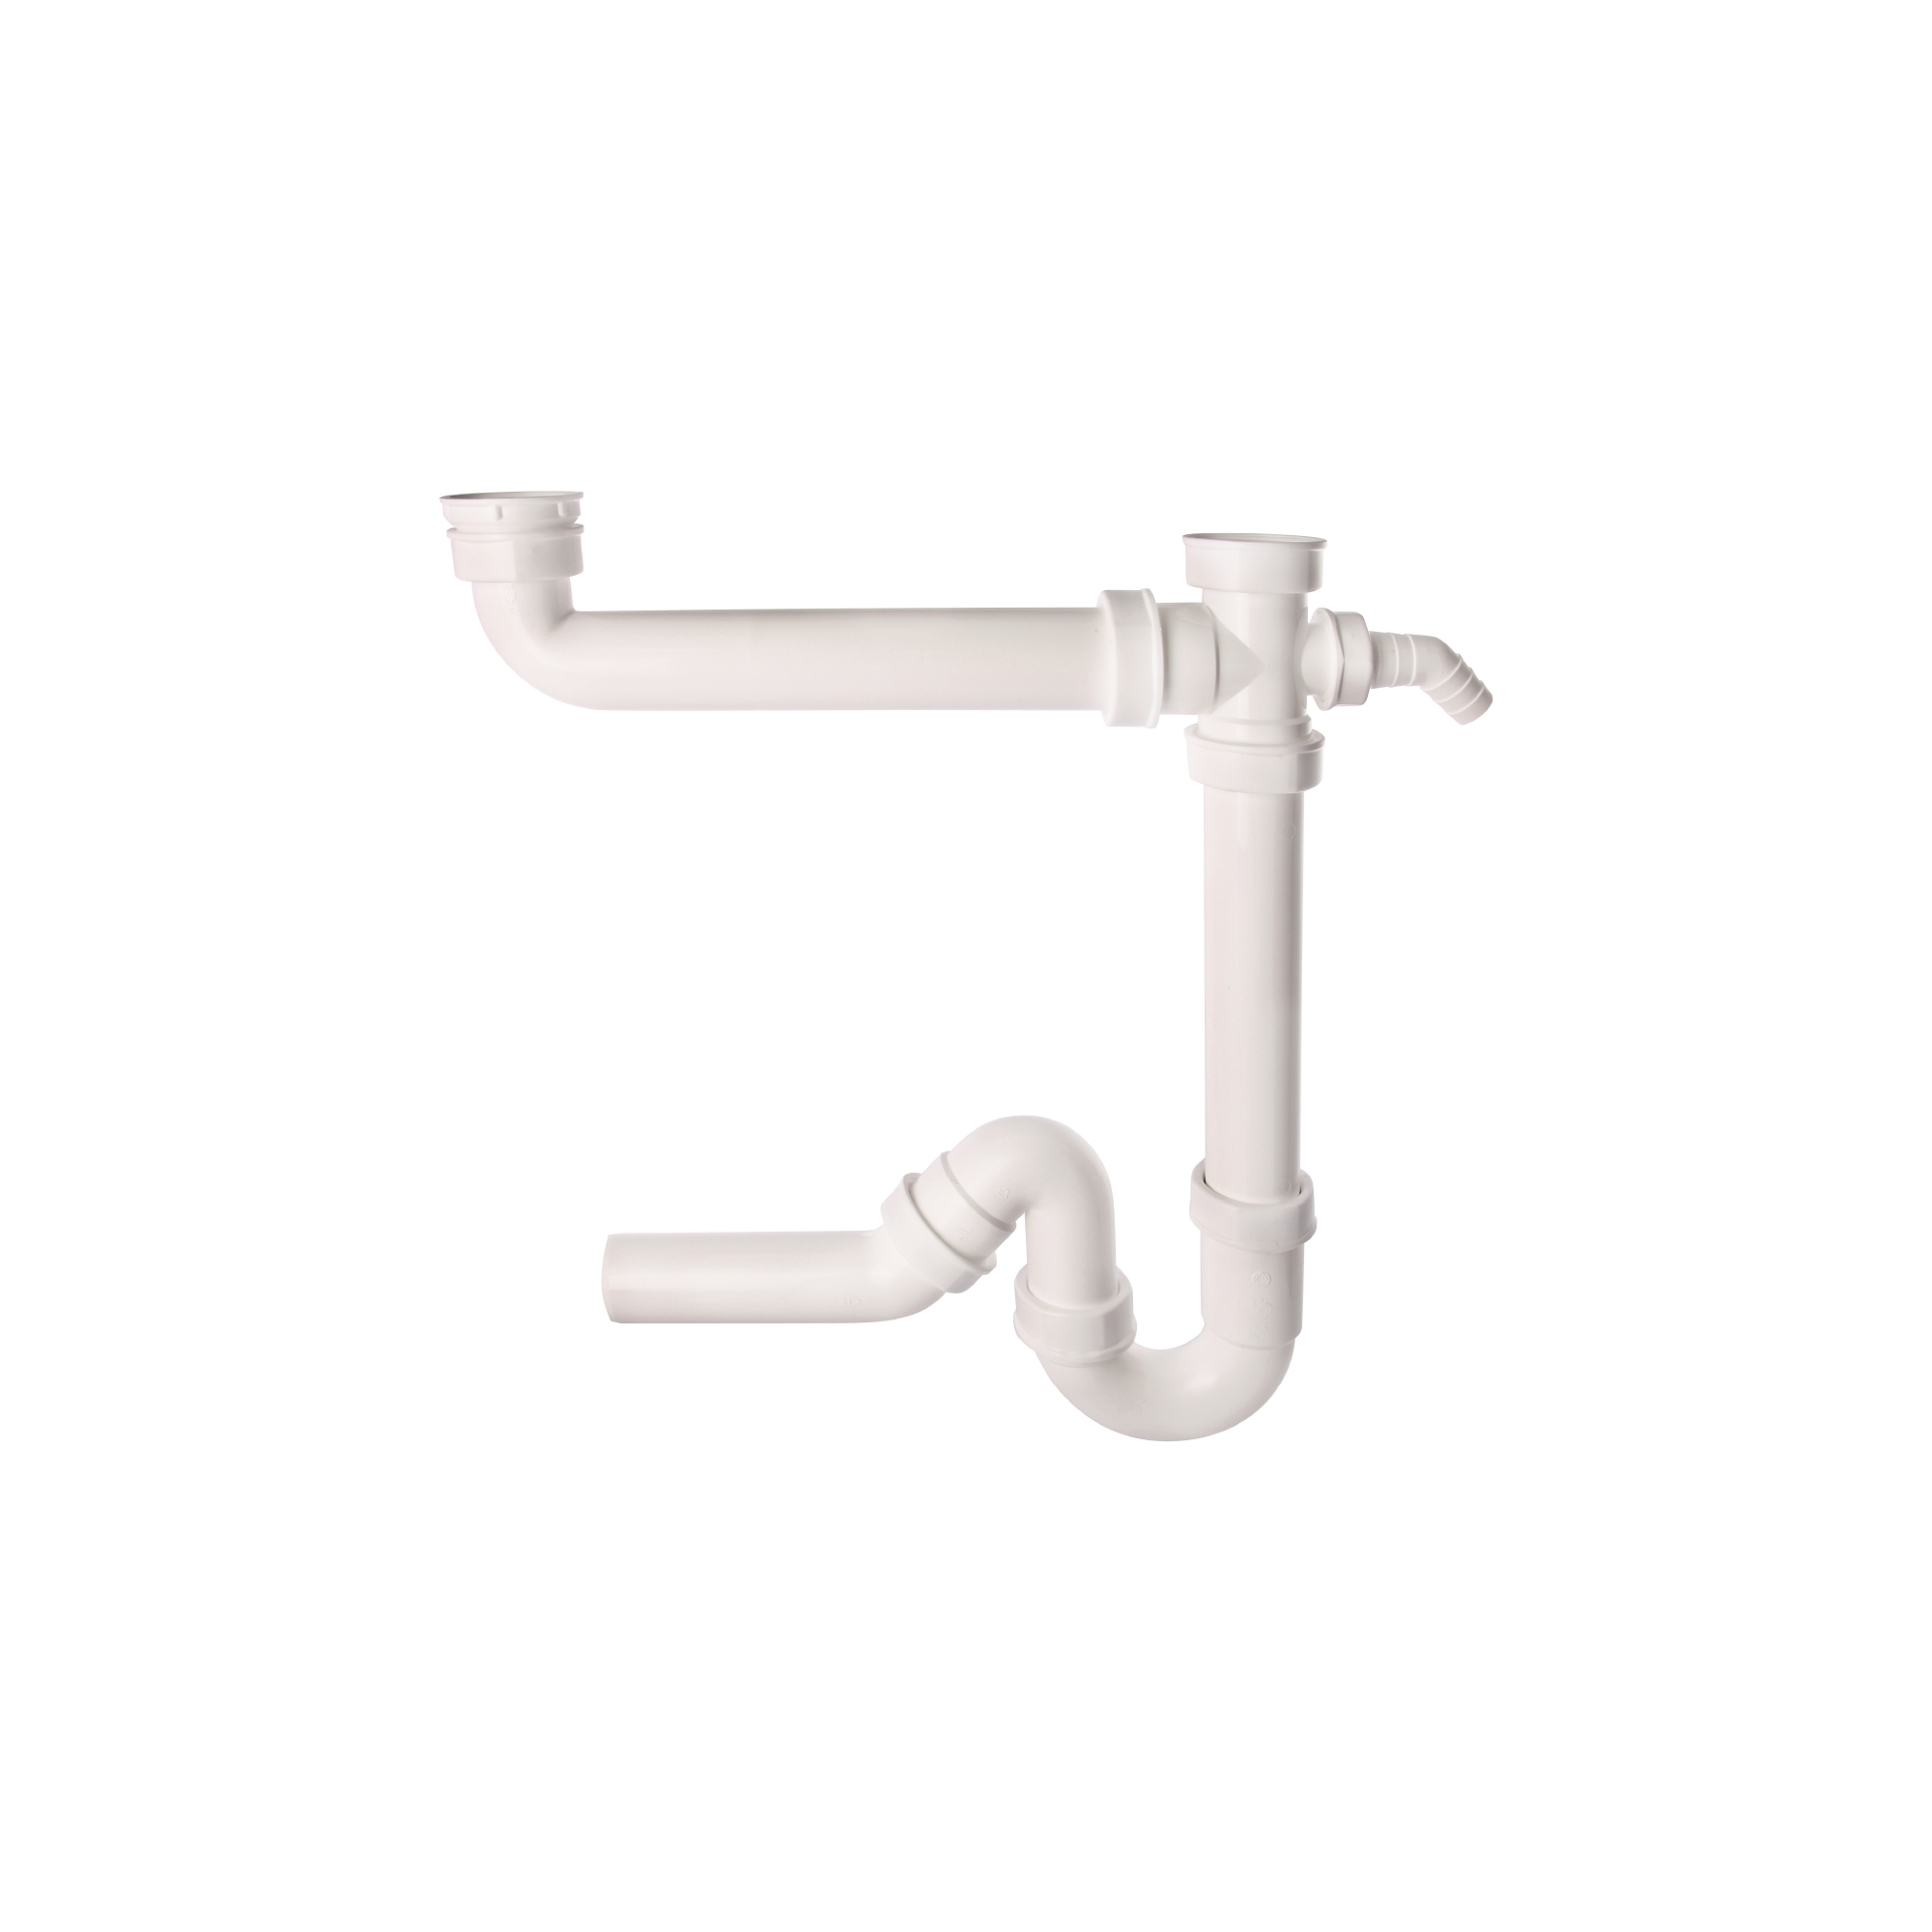 Röhrengeruchsverschluss für Doppelspülen, 1,5" x 40 mm, weiß + product picture